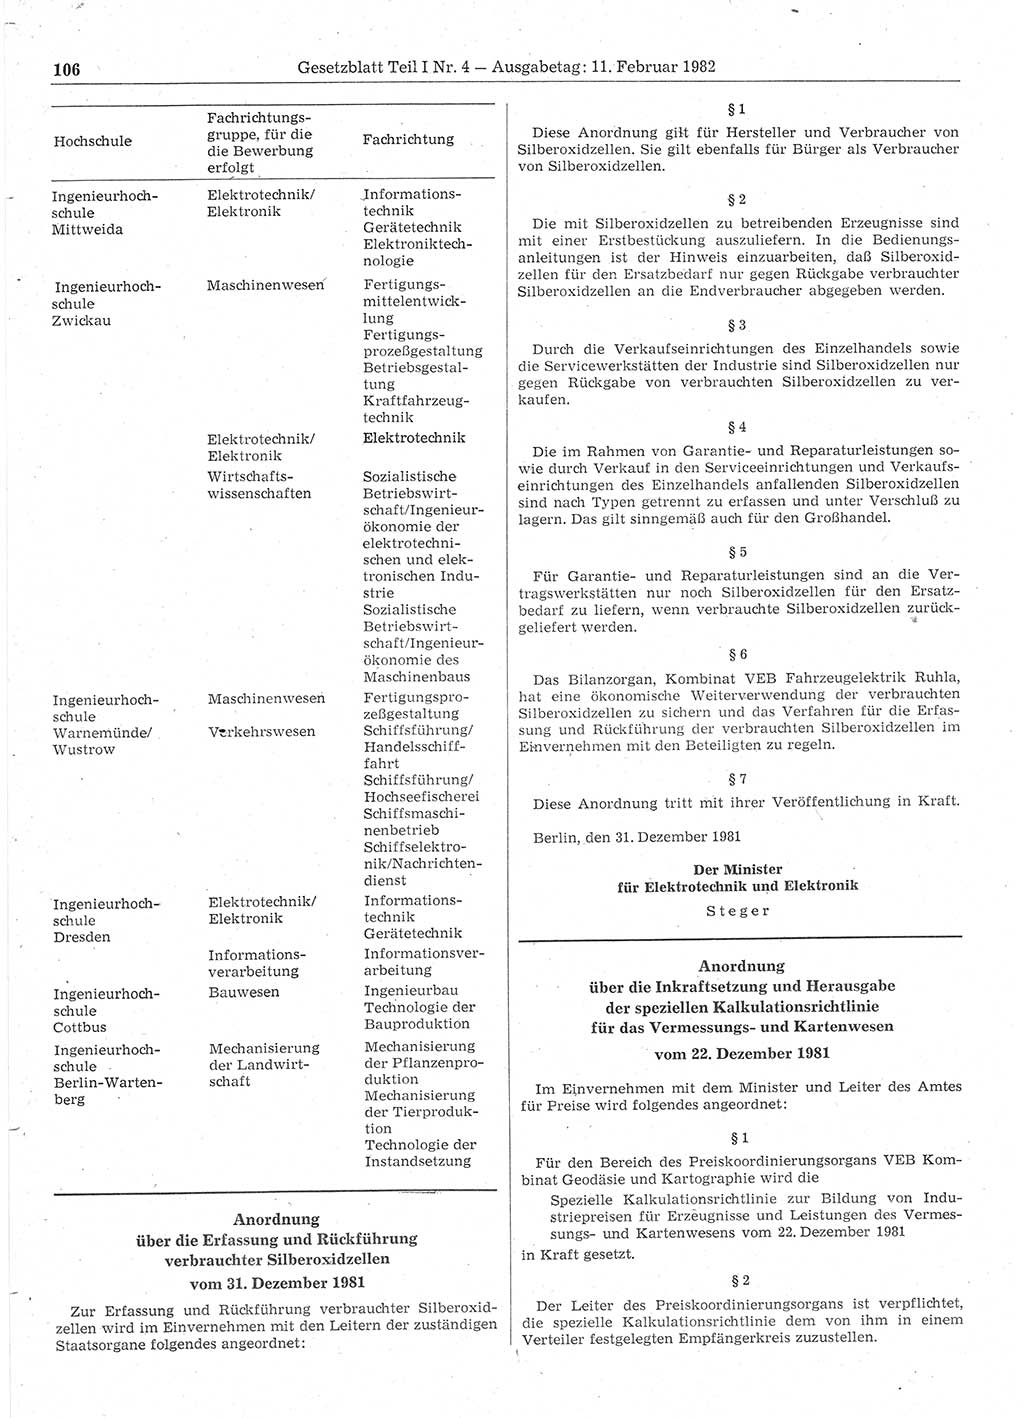 Gesetzblatt (GBl.) der Deutschen Demokratischen Republik (DDR) Teil Ⅰ 1982, Seite 106 (GBl. DDR Ⅰ 1982, S. 106)